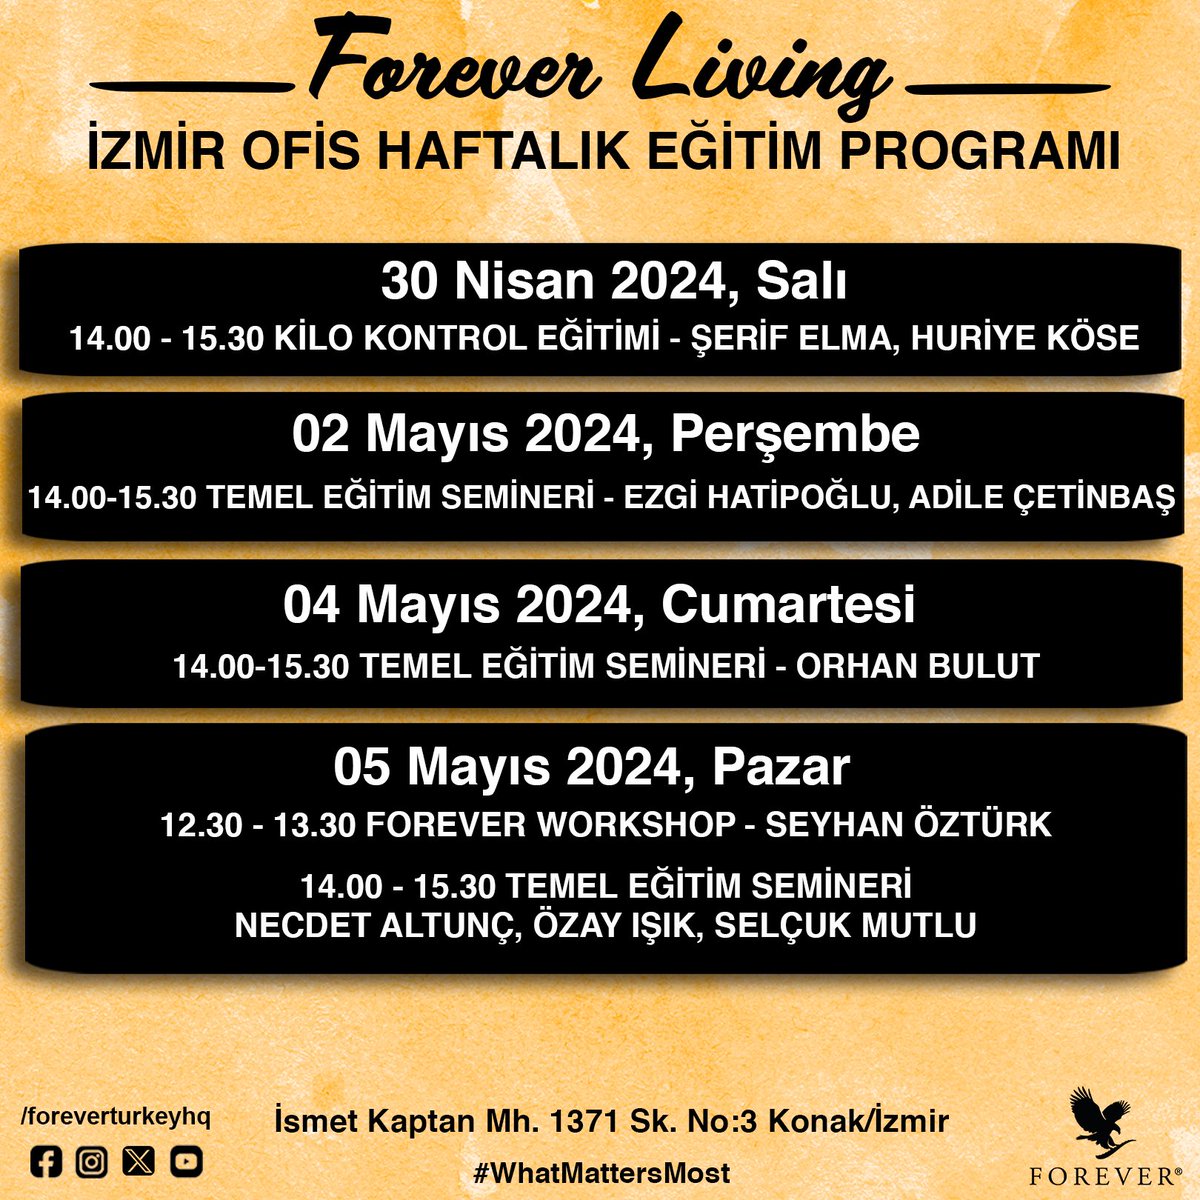 Forever Living İzmir Ofis Haftalık Eğitim Programı

#ForeverProud